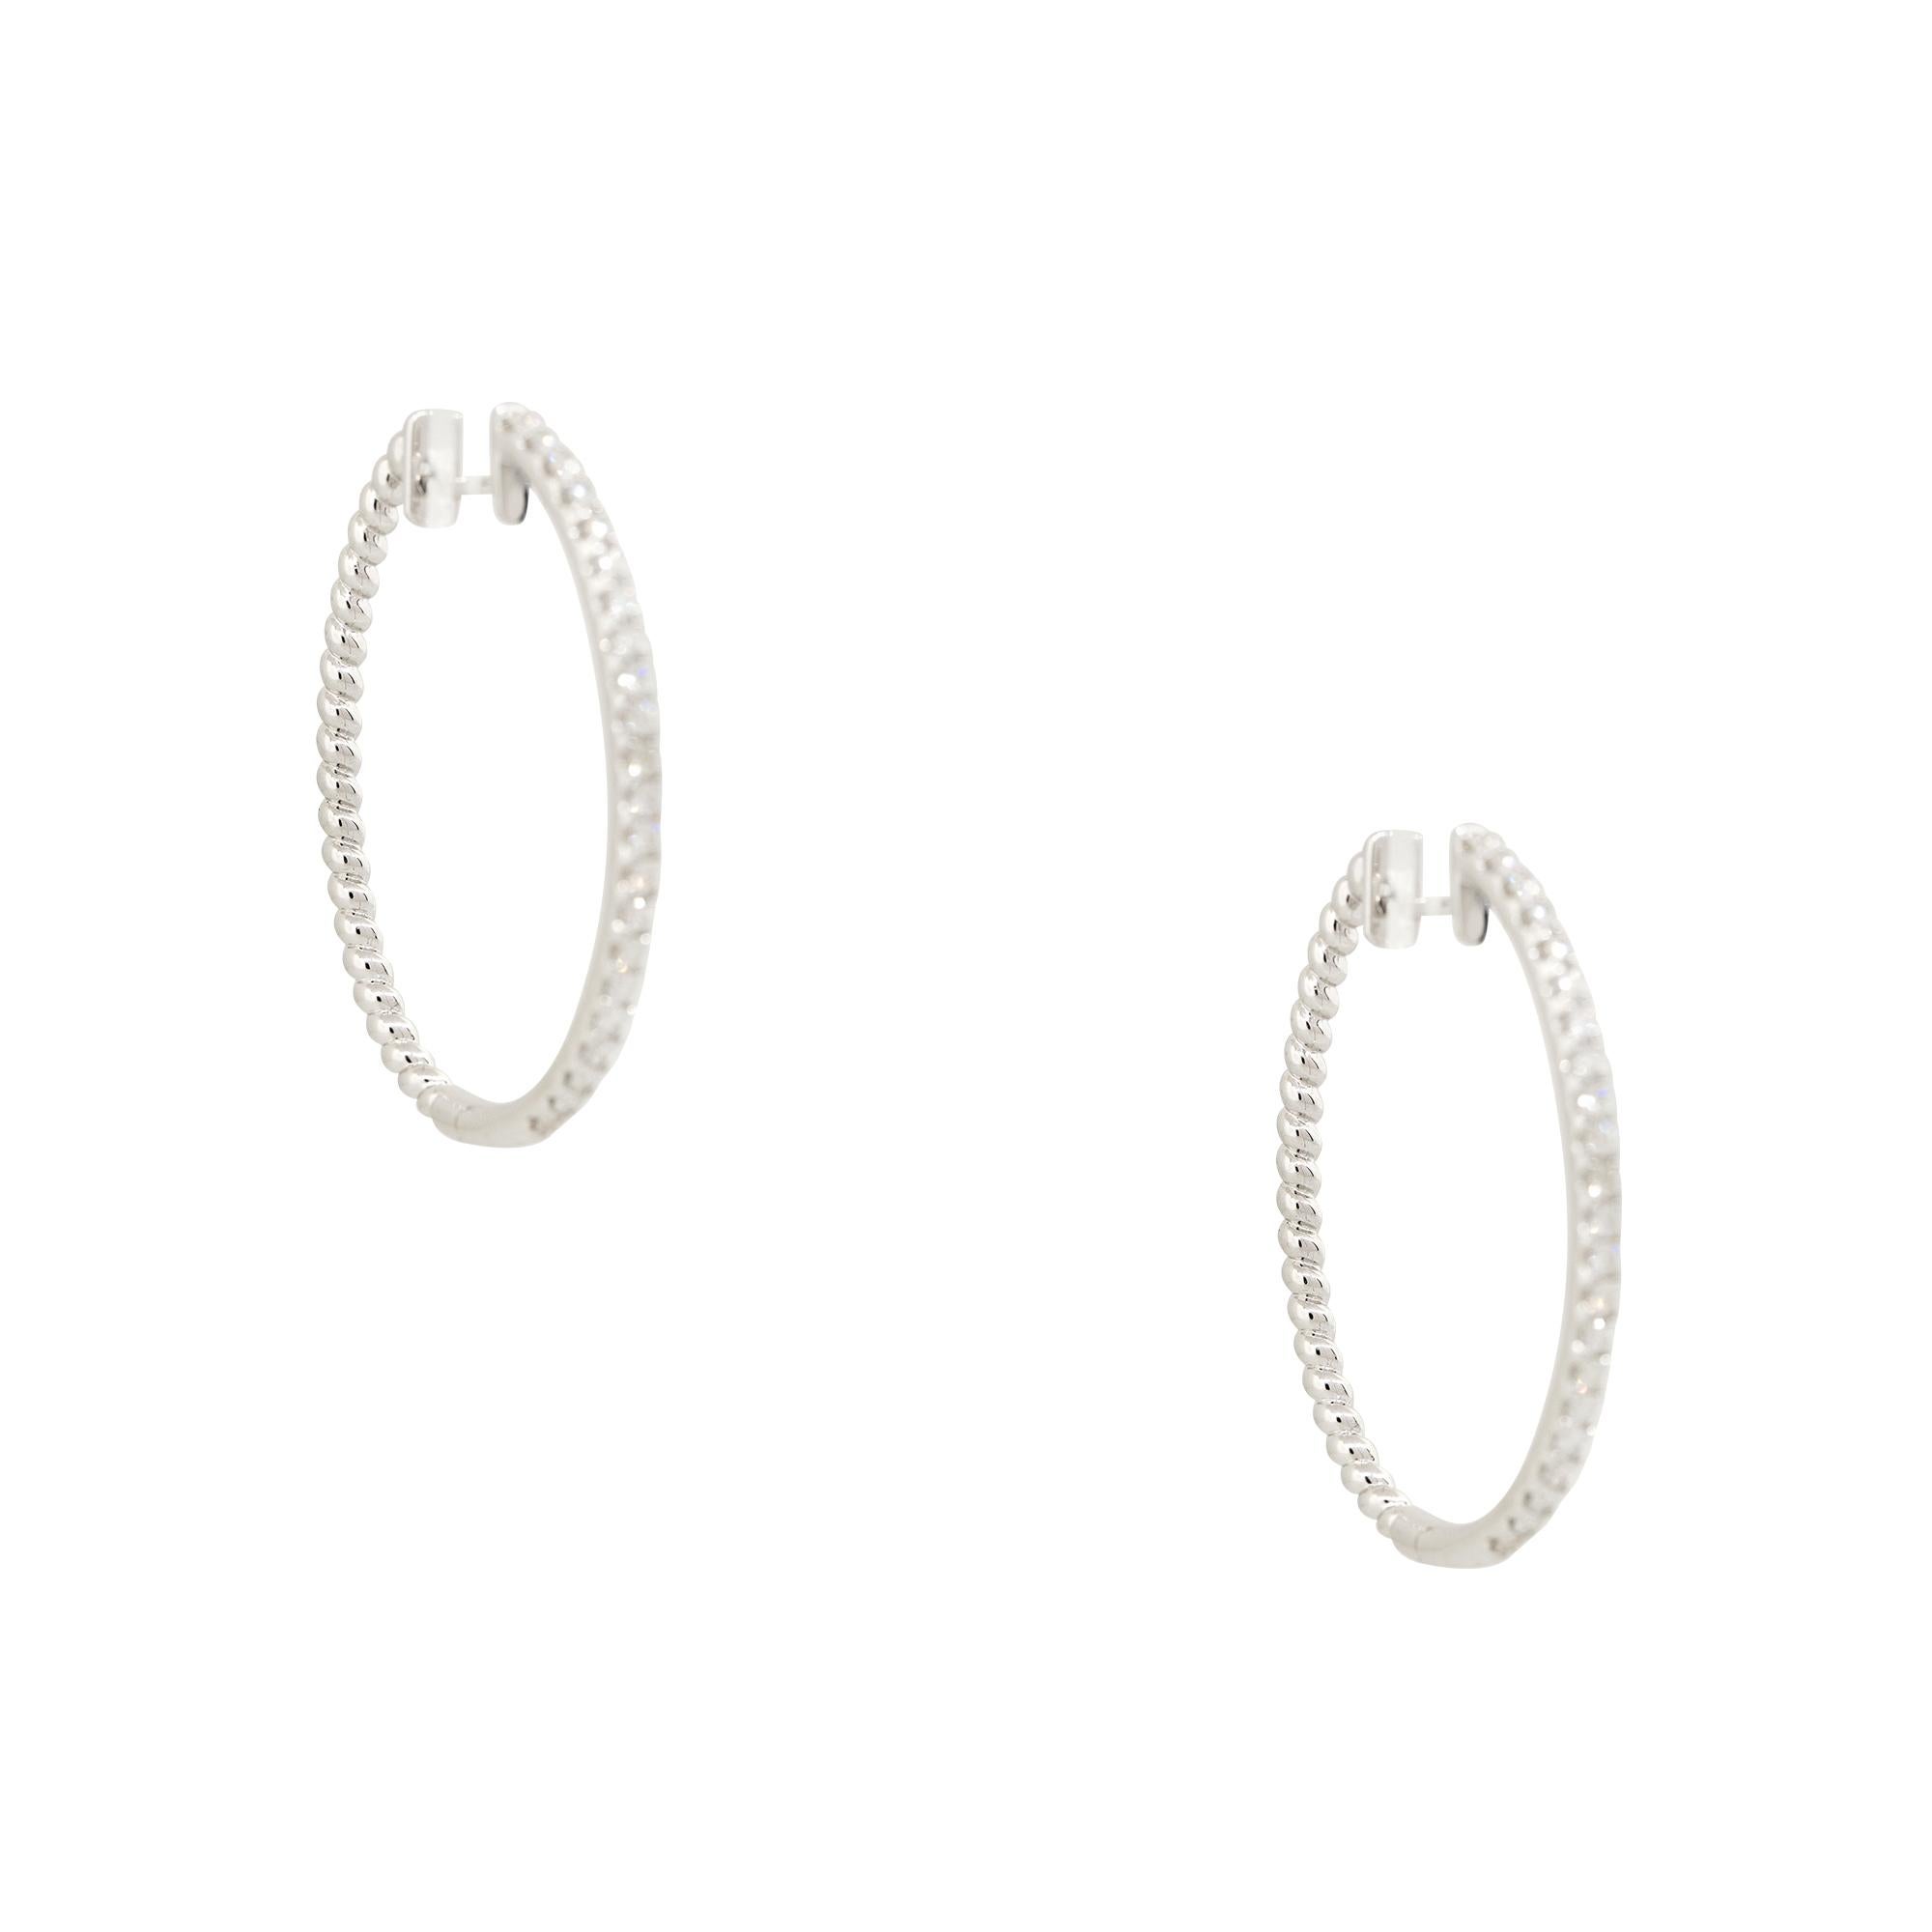 Round Cut 0.55 Carat Diamond Oval Hoop Earrings 18 Karat In Stock For Sale